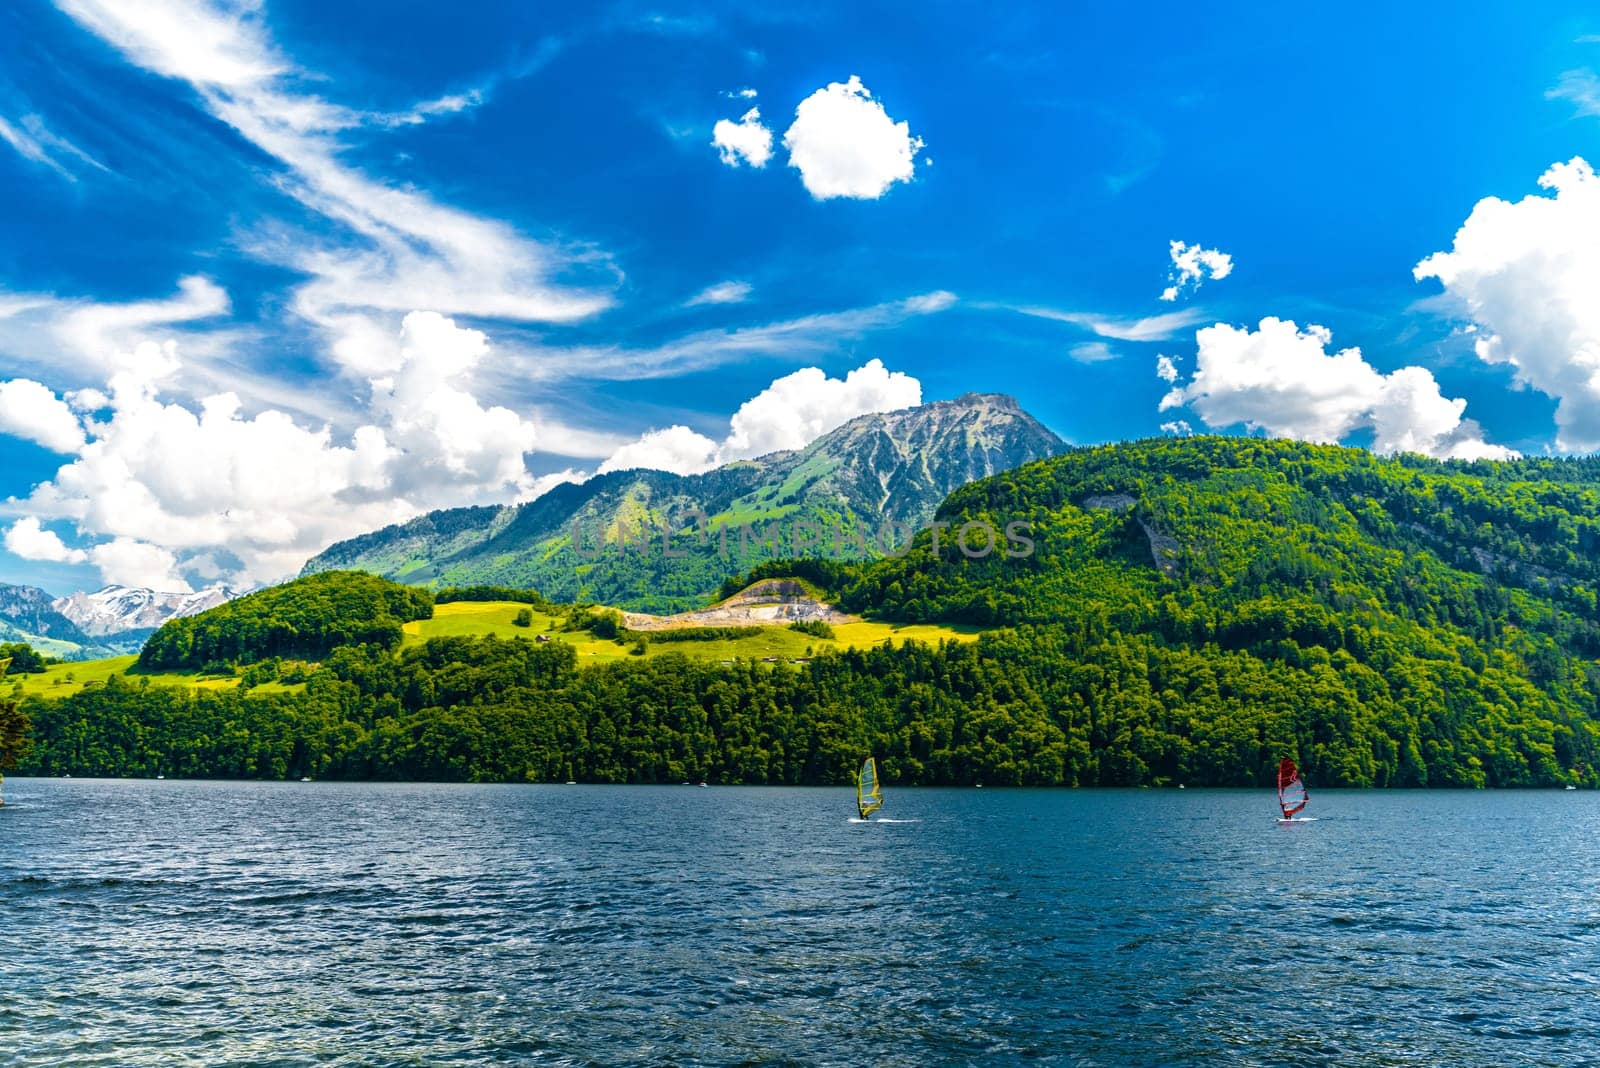 Windsurfers in the lake, Alpnachstadt, Alpnach Obwalden Switzerland.